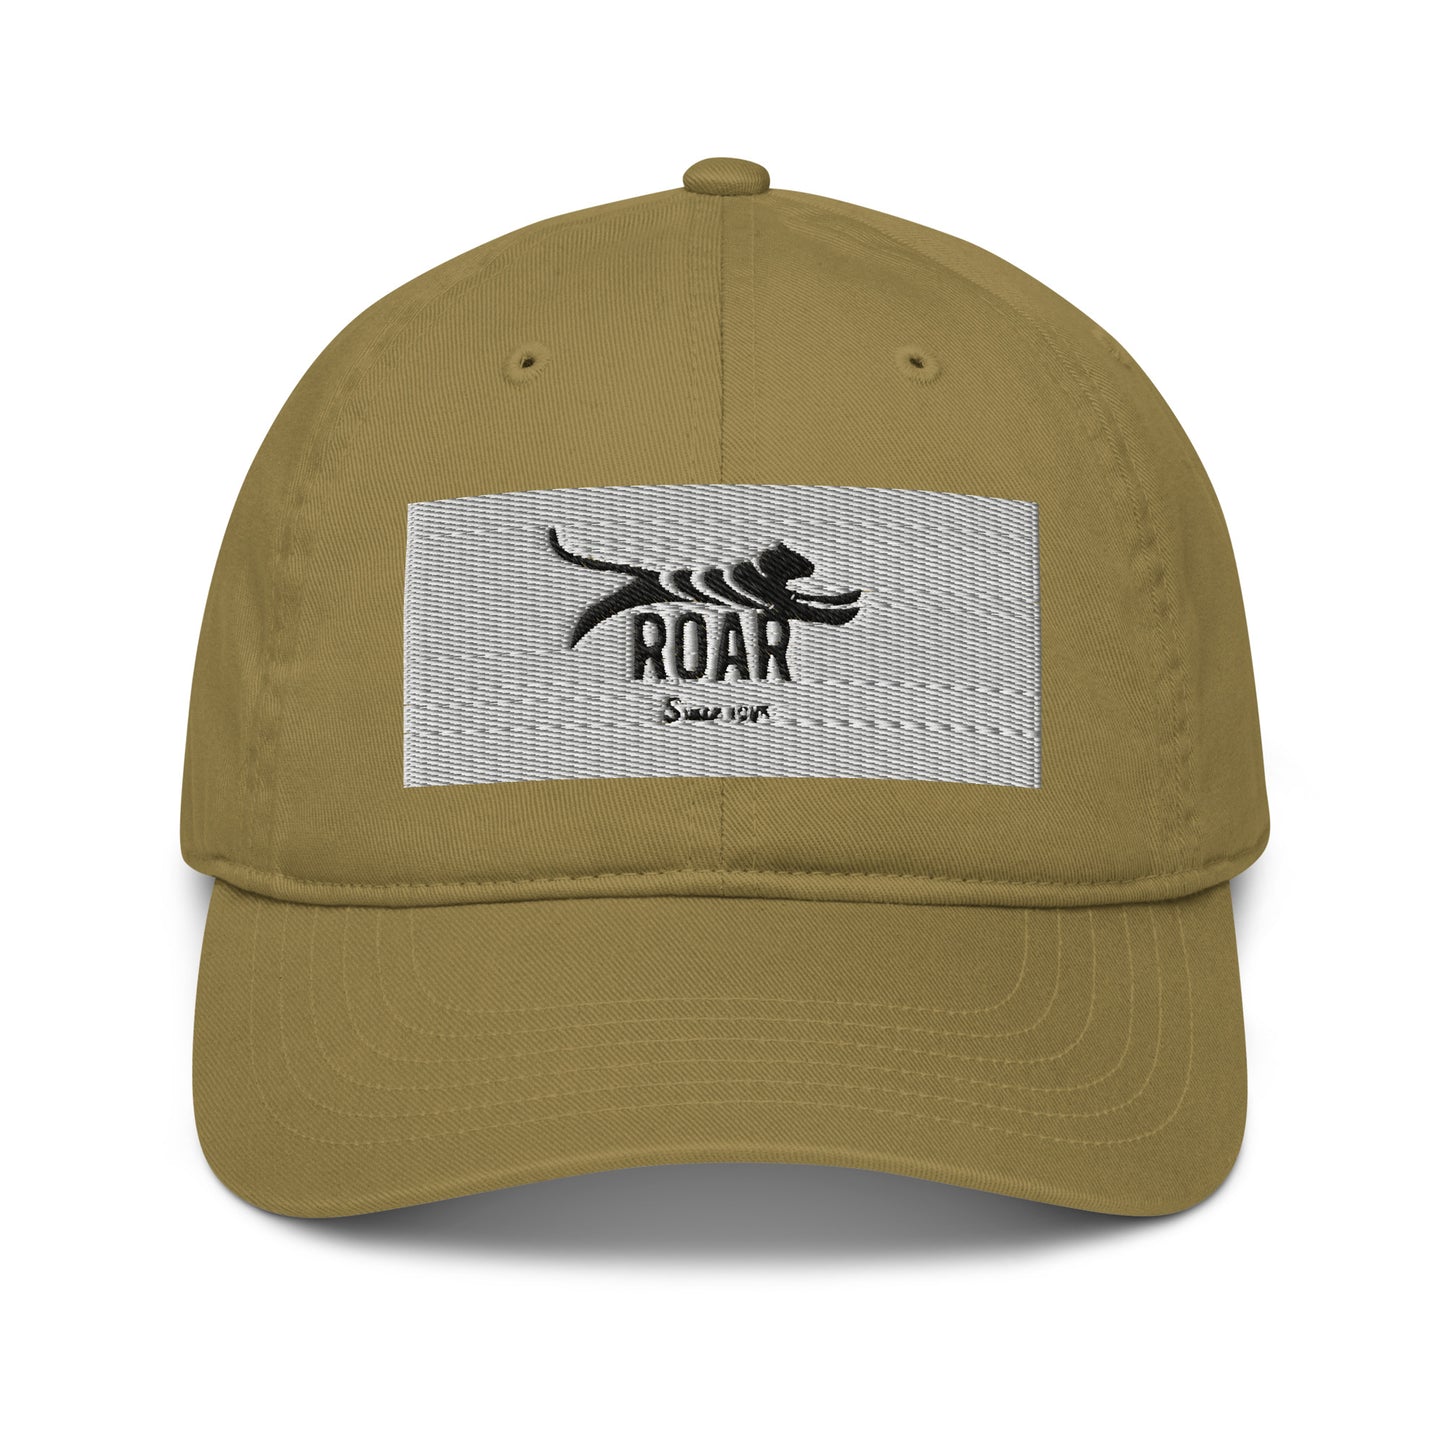 Roar Organic dad hat